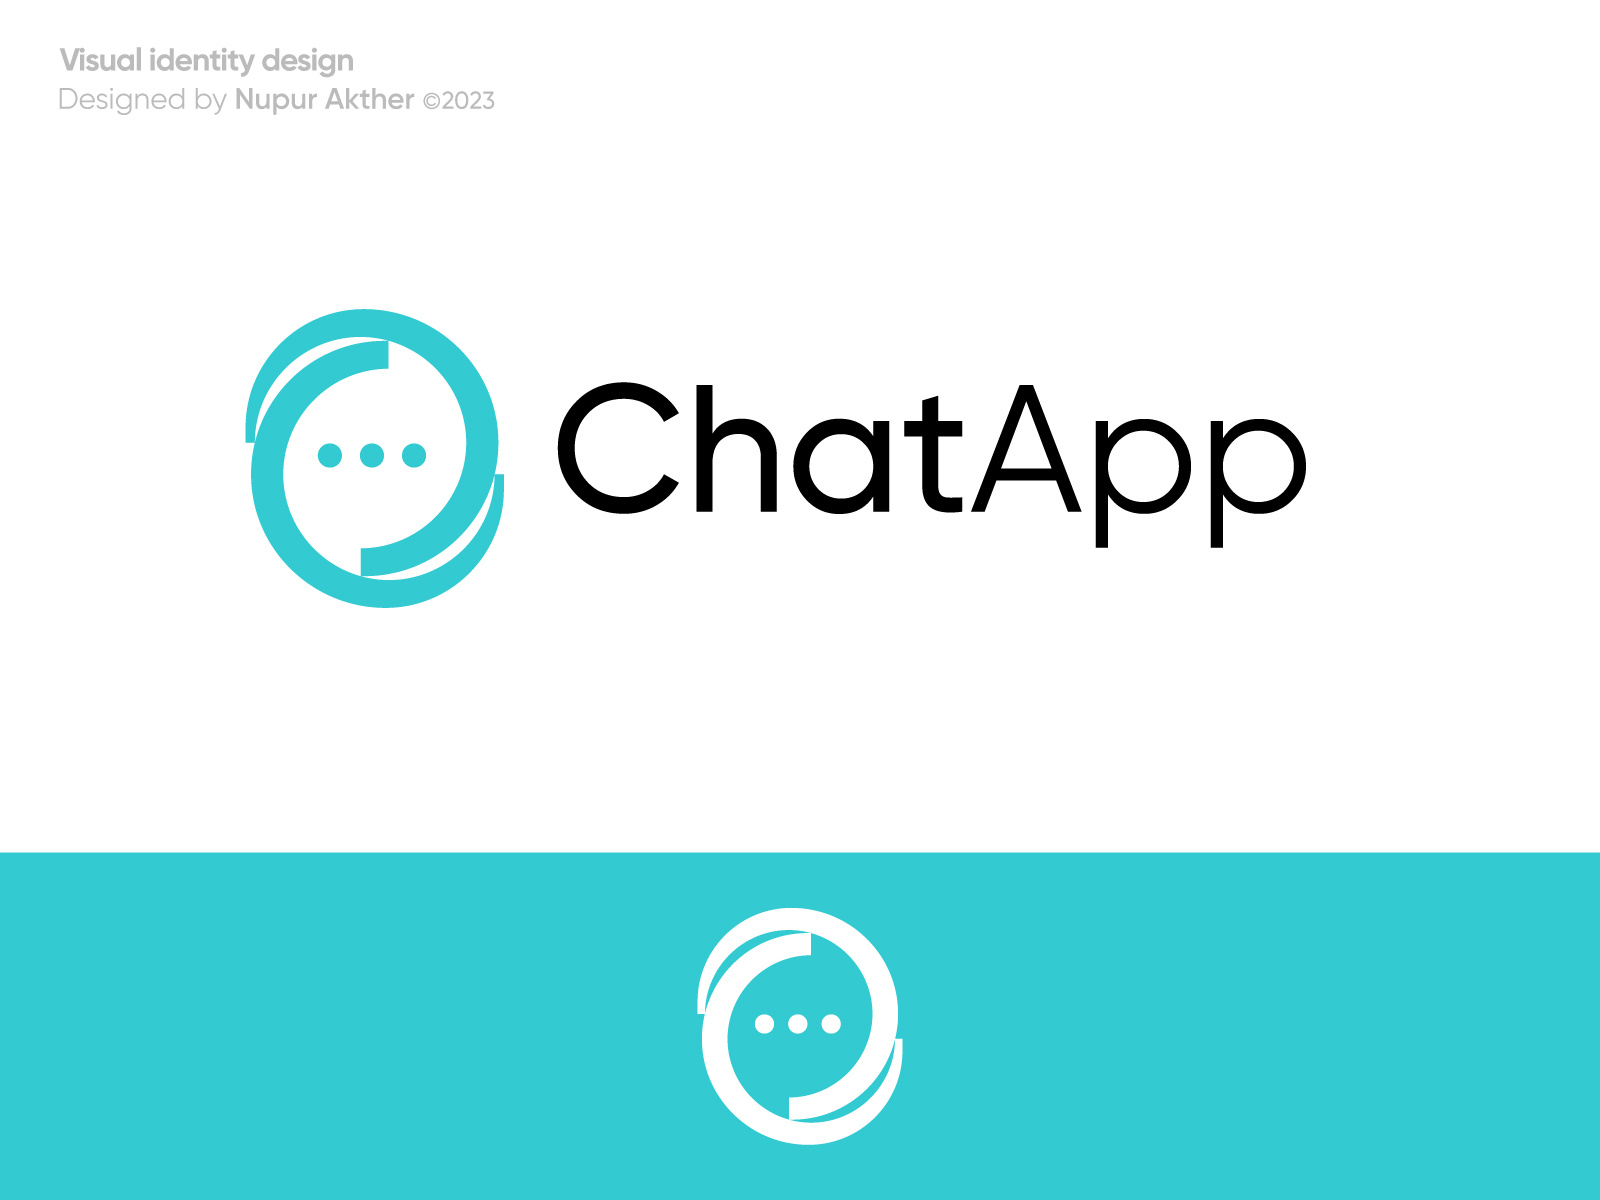 ChatApp logo by Nupur Akther - Logo Designer on Dribbble